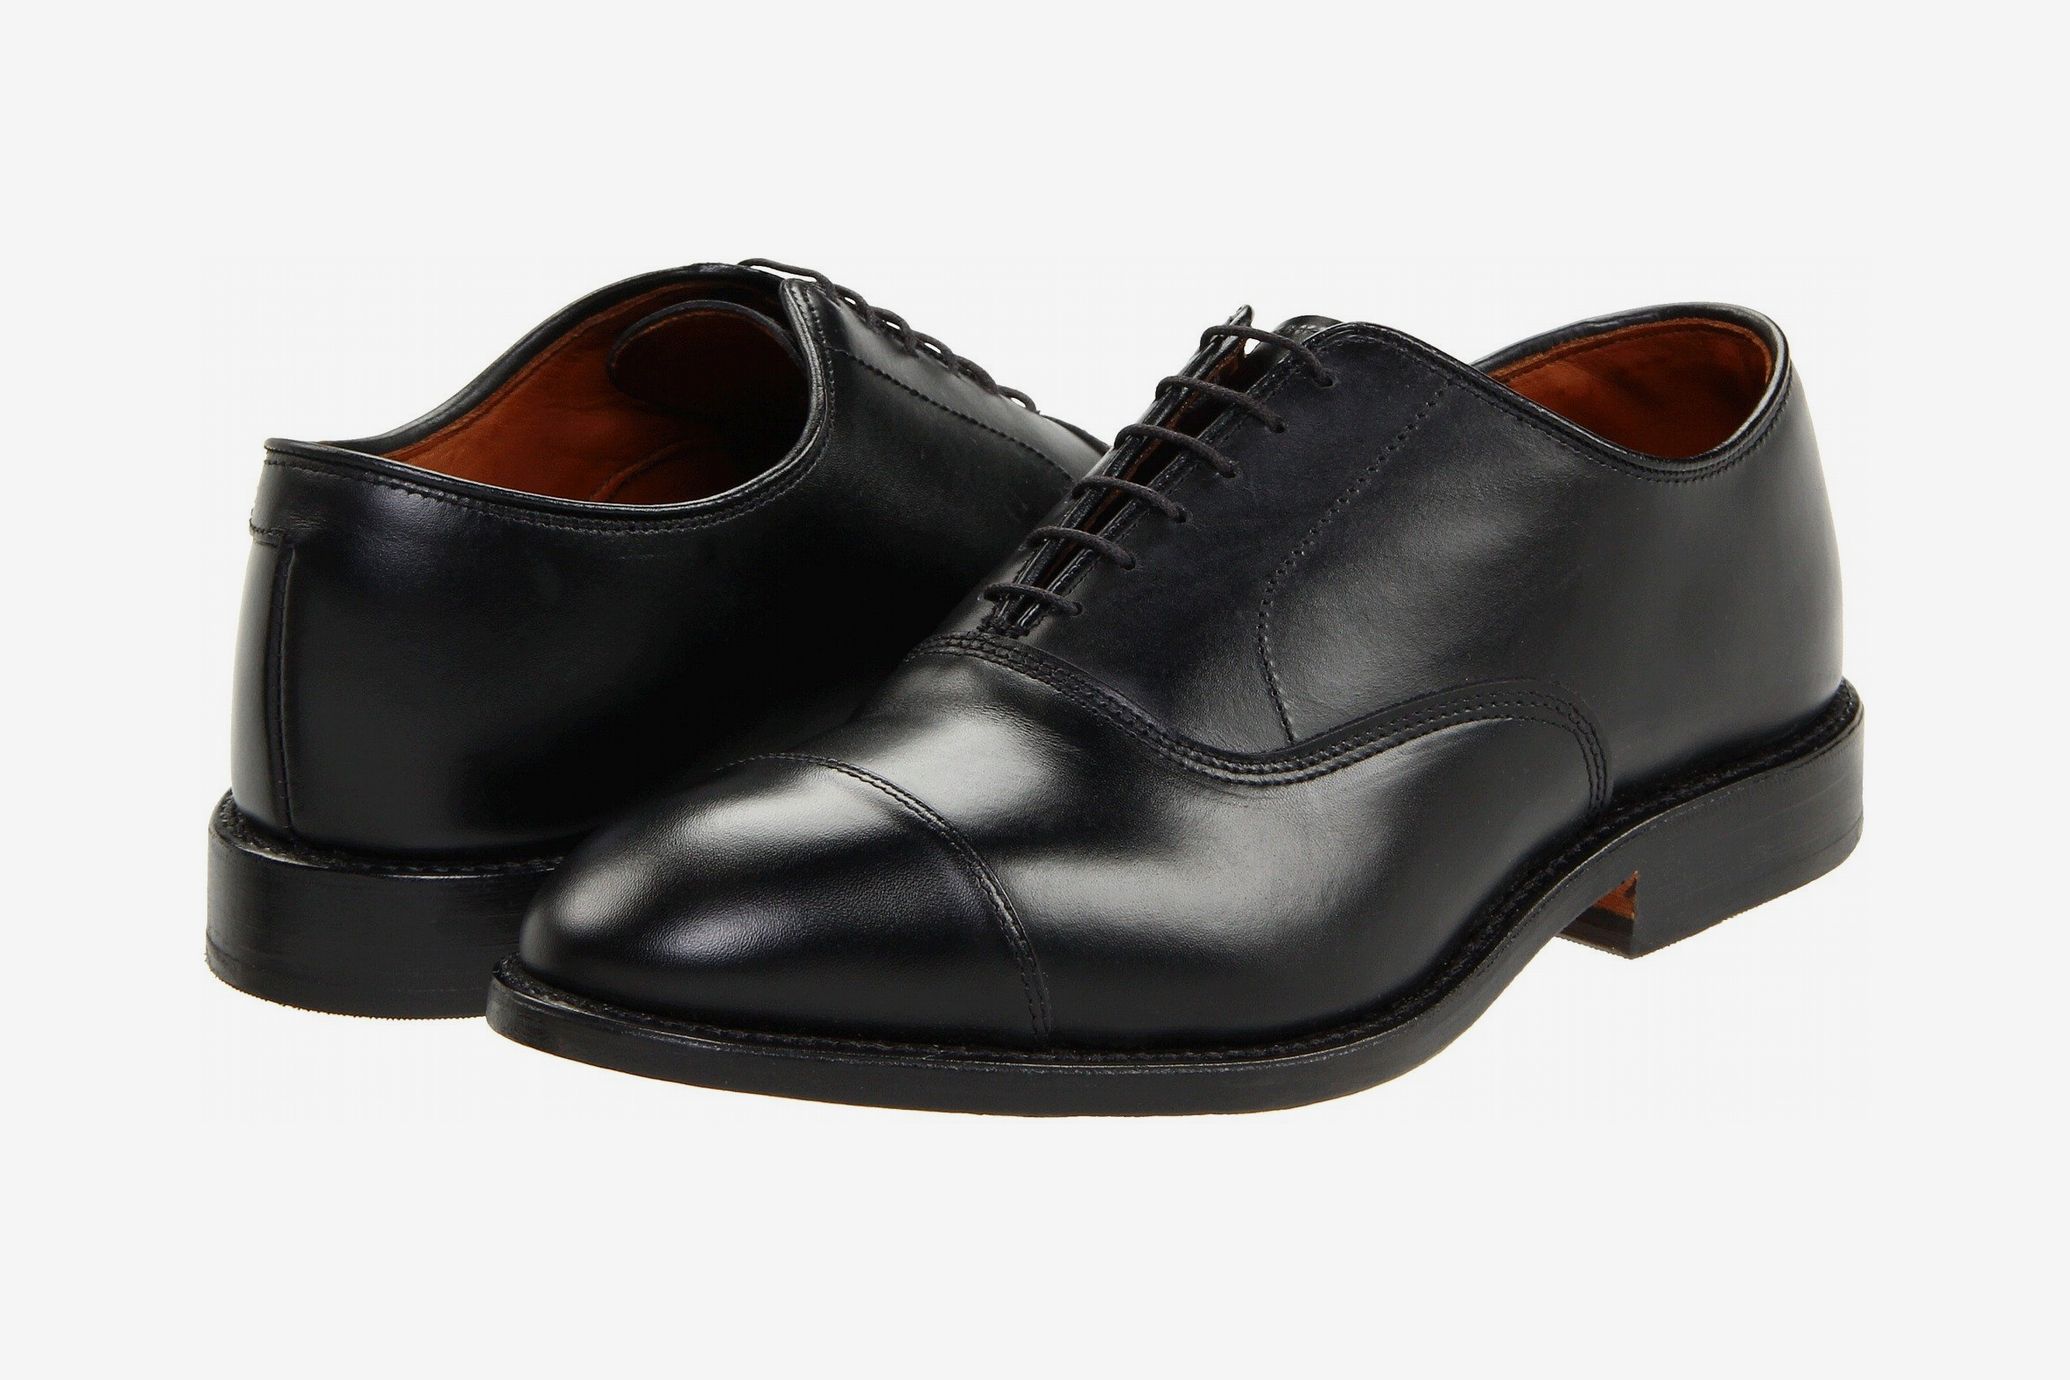 Men's Formal Blue Brogue Shoes sizes 6-12 